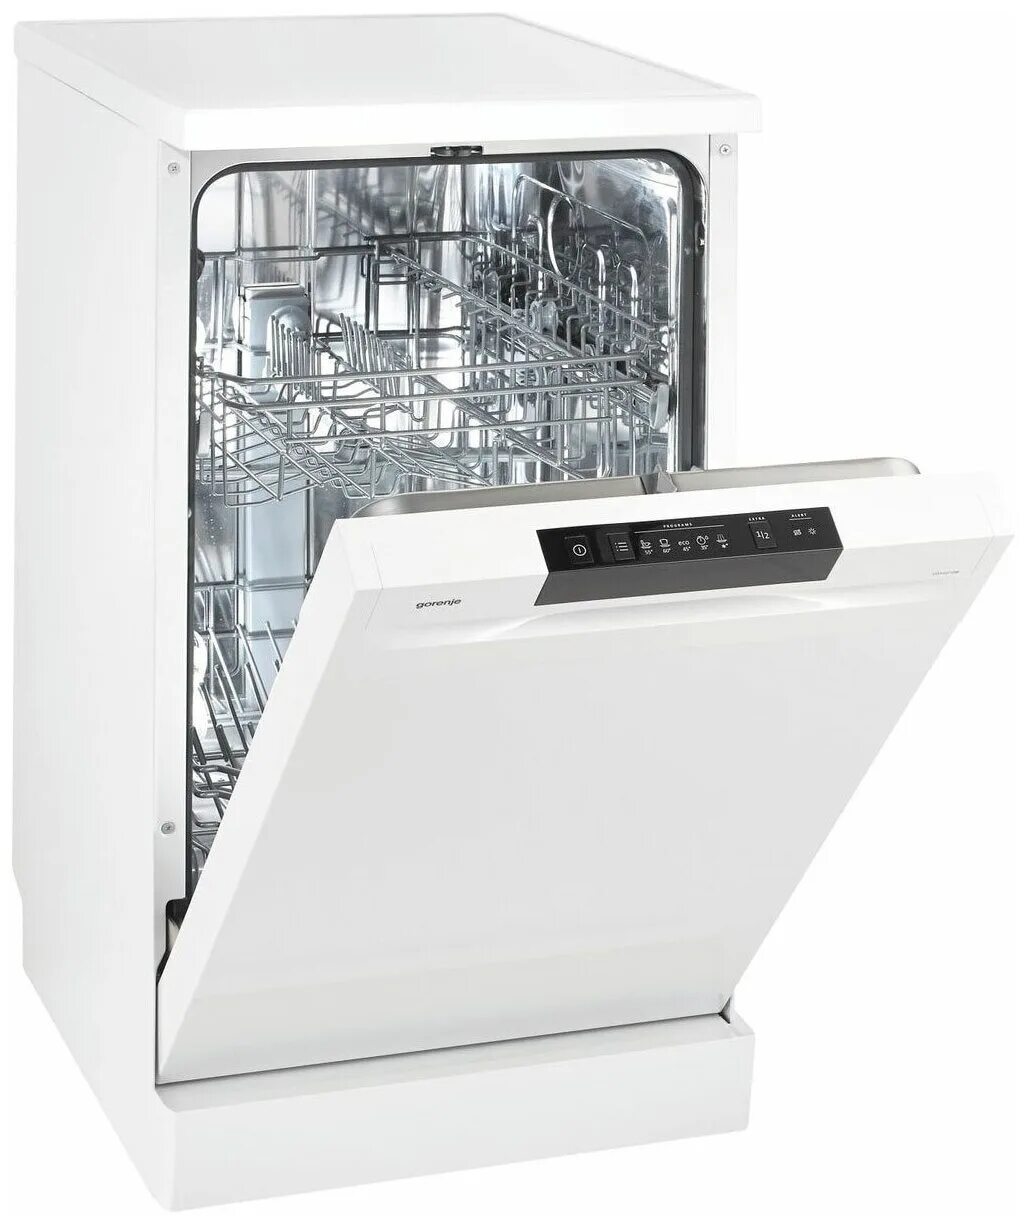 Посудомоечная машина Gorenje gs52010w. Посудомоечная машина Gorenje gs53010w. Gorenje gs620e10w. Посудомоечная машина Горенье 62040. Встроенная посудомойка горенье